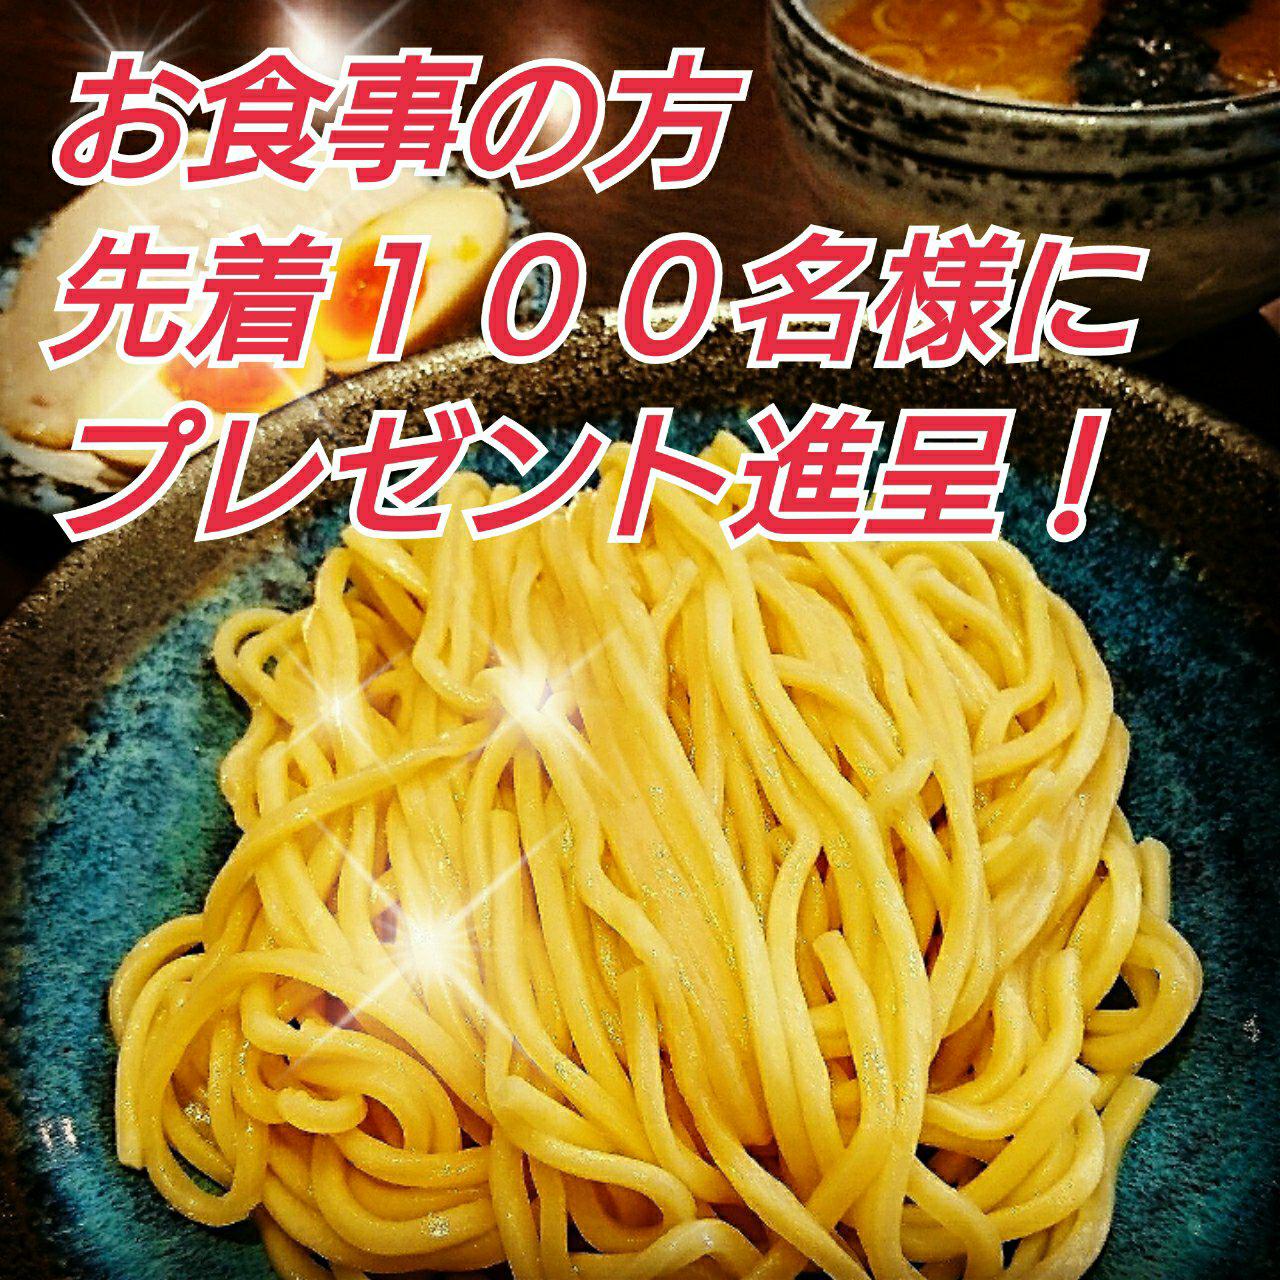 麺彩房五反田店１２月２９日のイベント告知